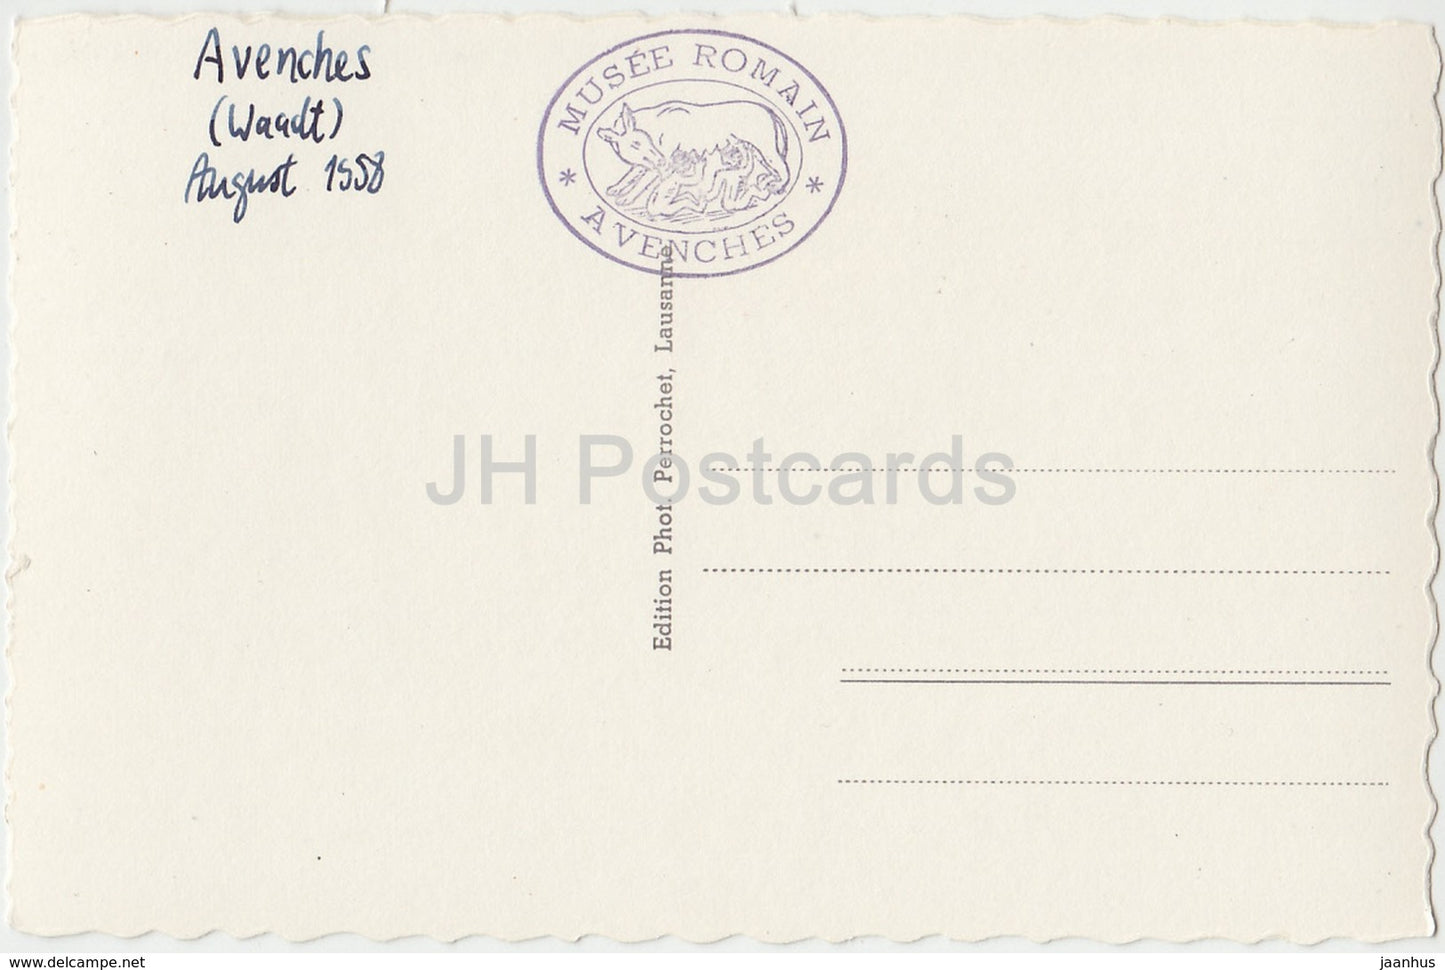 Avenches - Entrée de Musée - musée - 772 - Suisse - 1958 - cartes postales anciennes - occasion